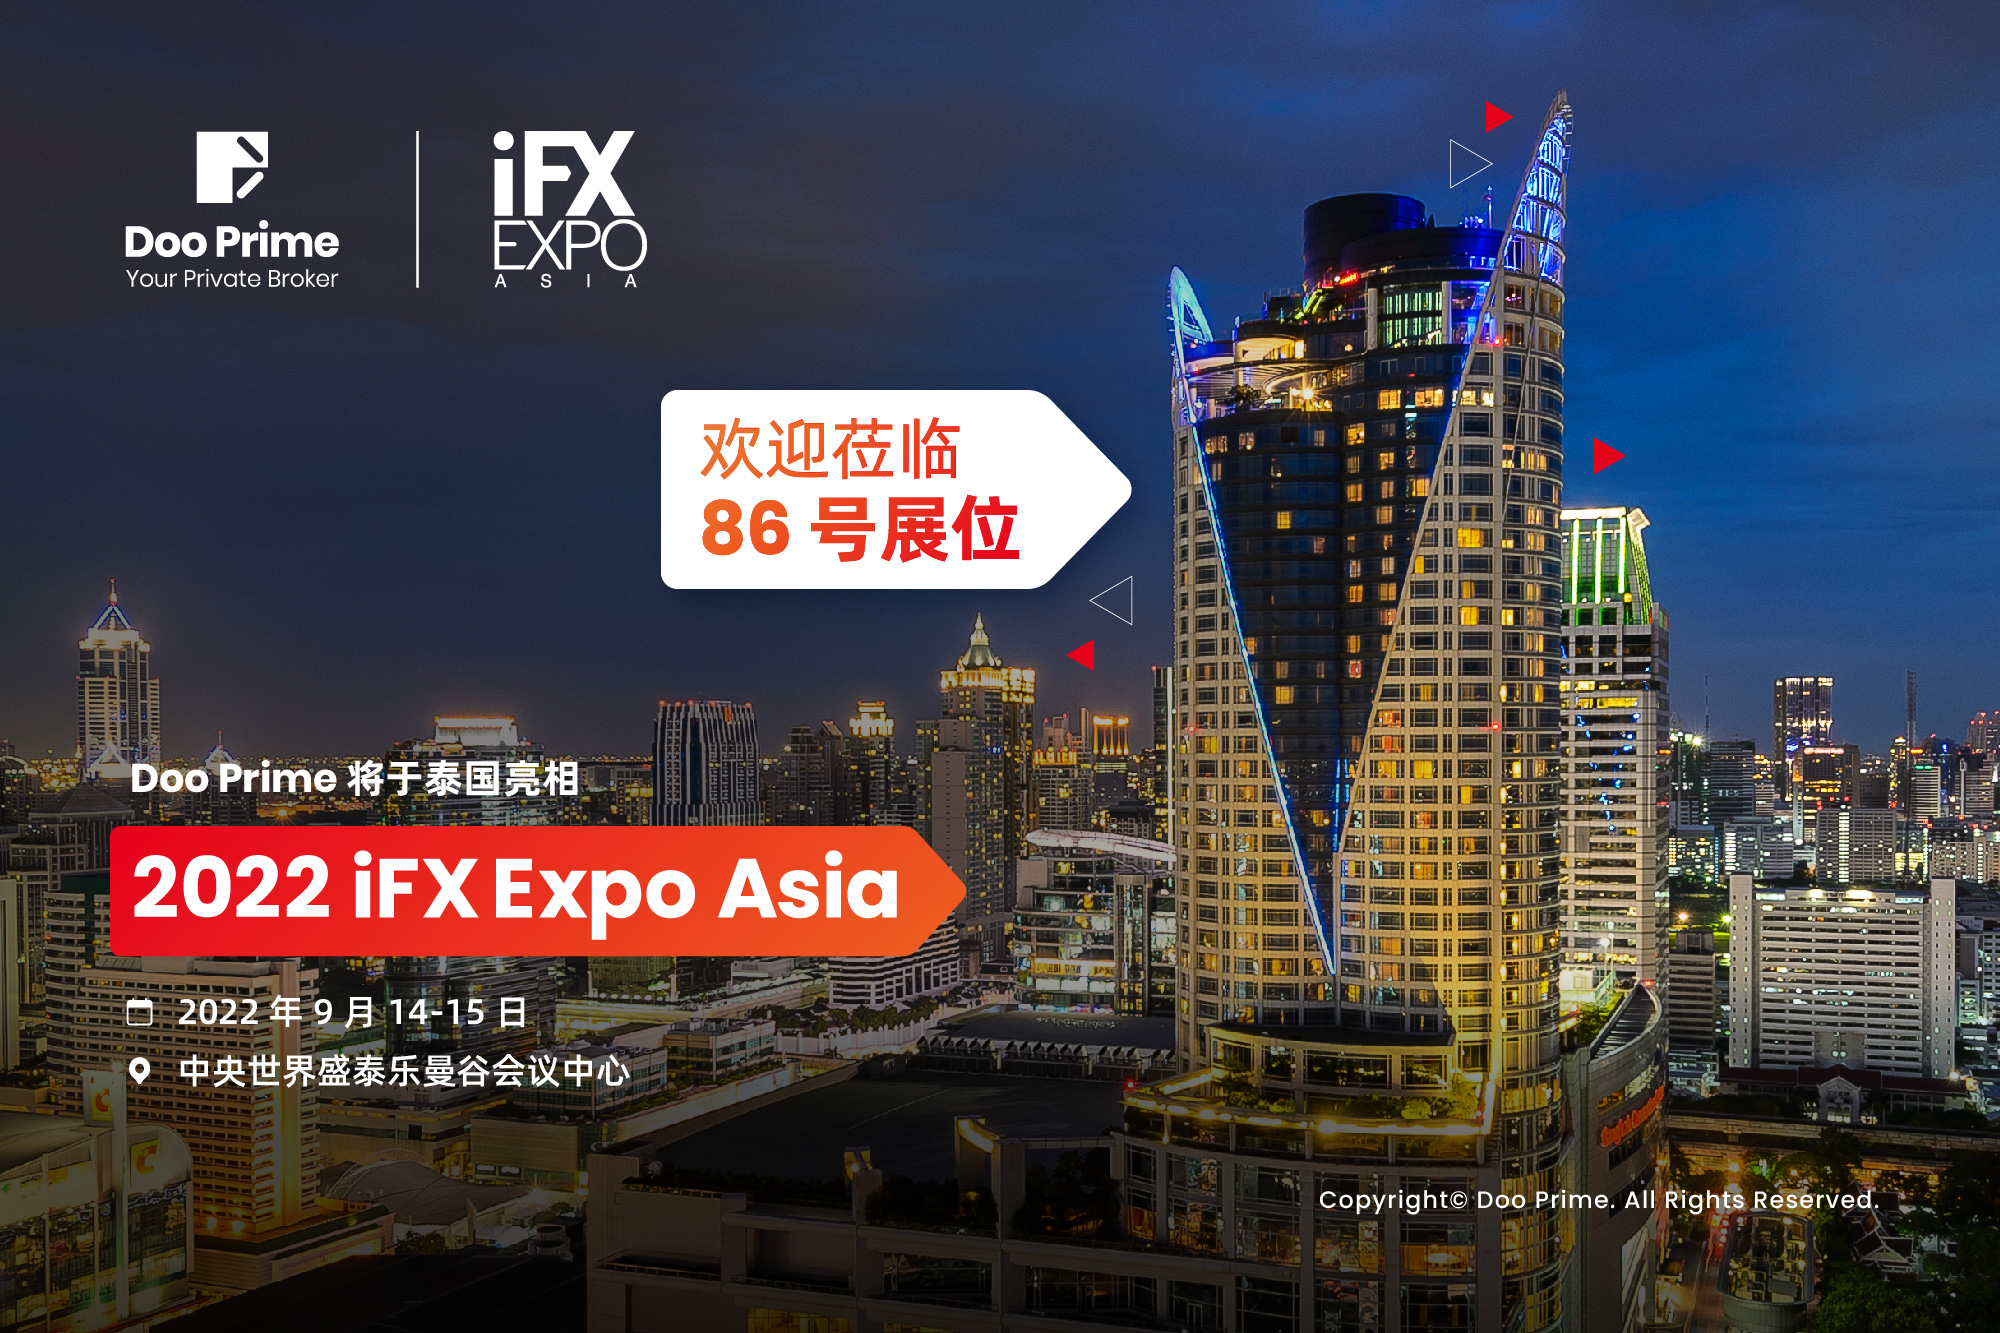 Doo Prime 将于泰国亮相 2022 iFX Expo Asia